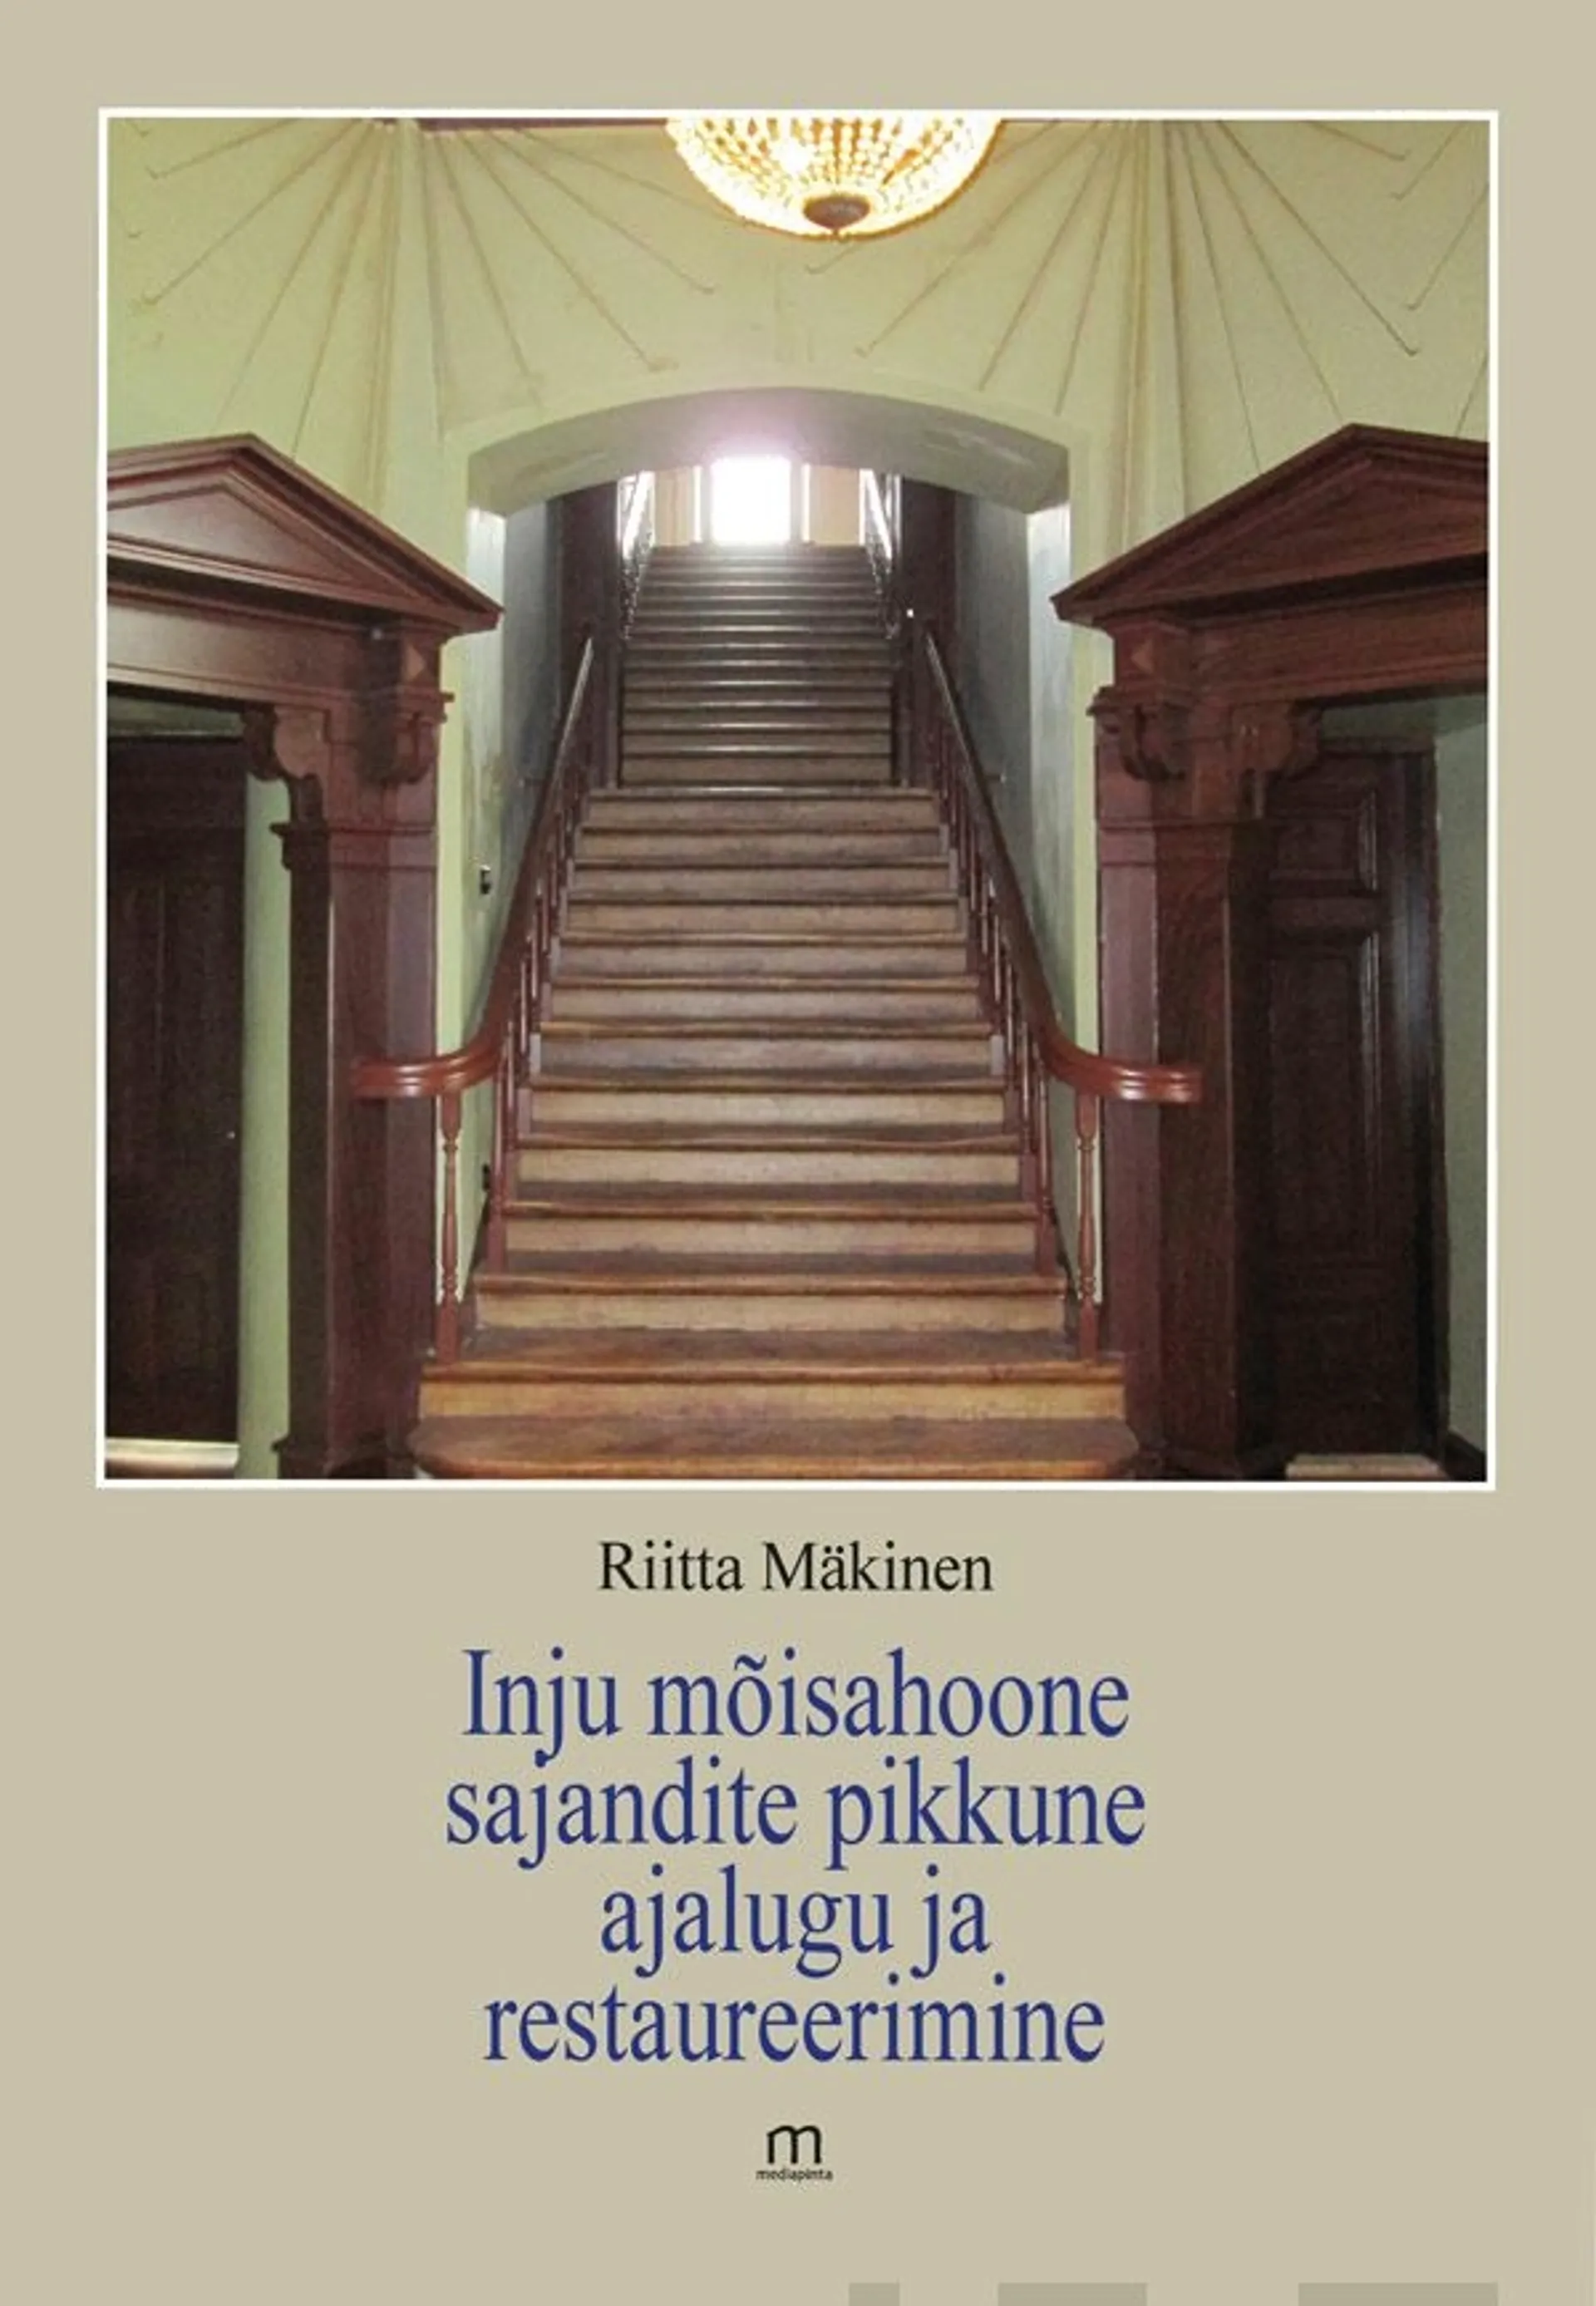 Mäkinen, Inju mõisahoone sajandite pikkune ajalugu ja restaureerimine